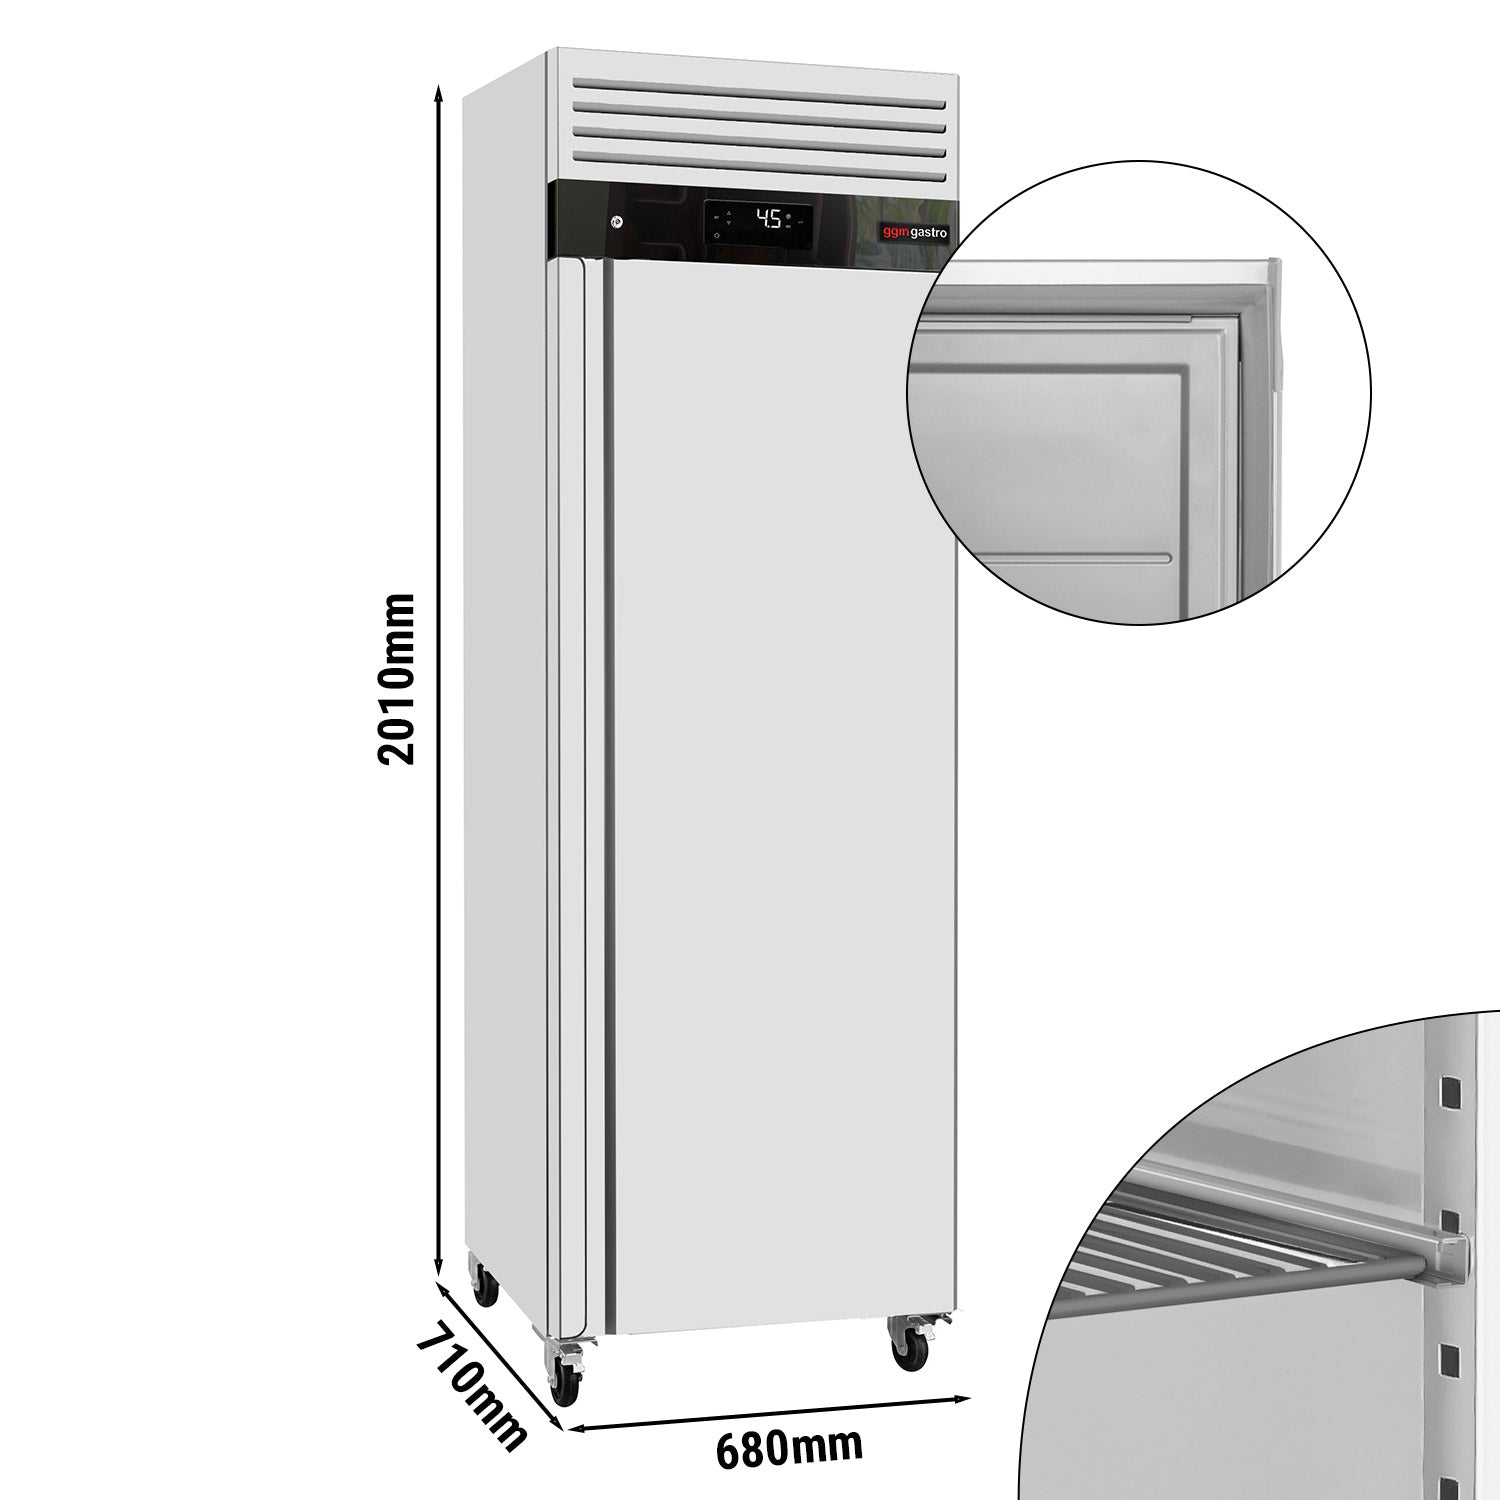 Refrigerator ECO - 0.68 x 0.71 m - 452 liters - with 1 door